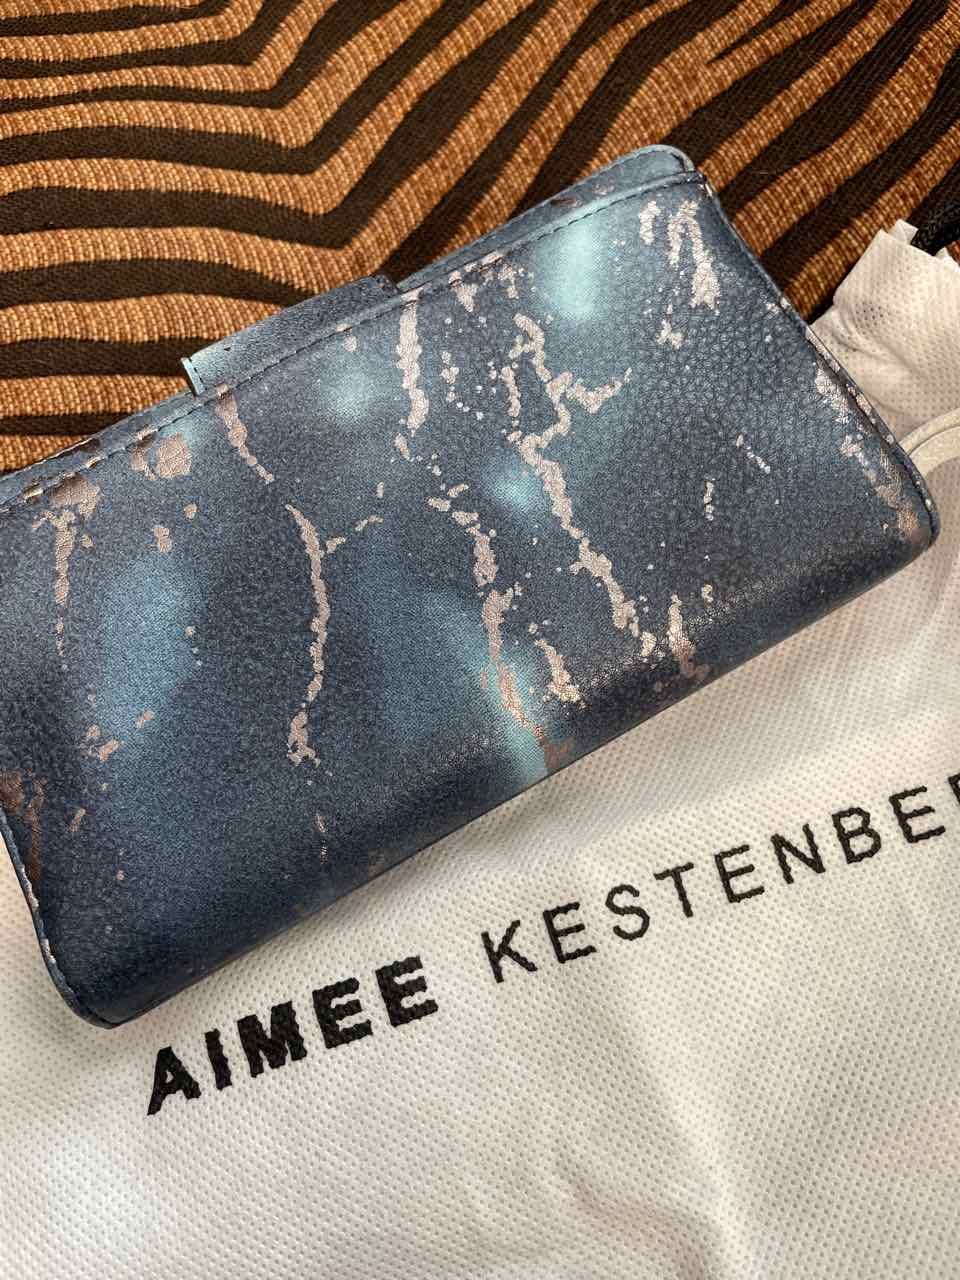 Accessories - Aimee Kestenberg Wallet